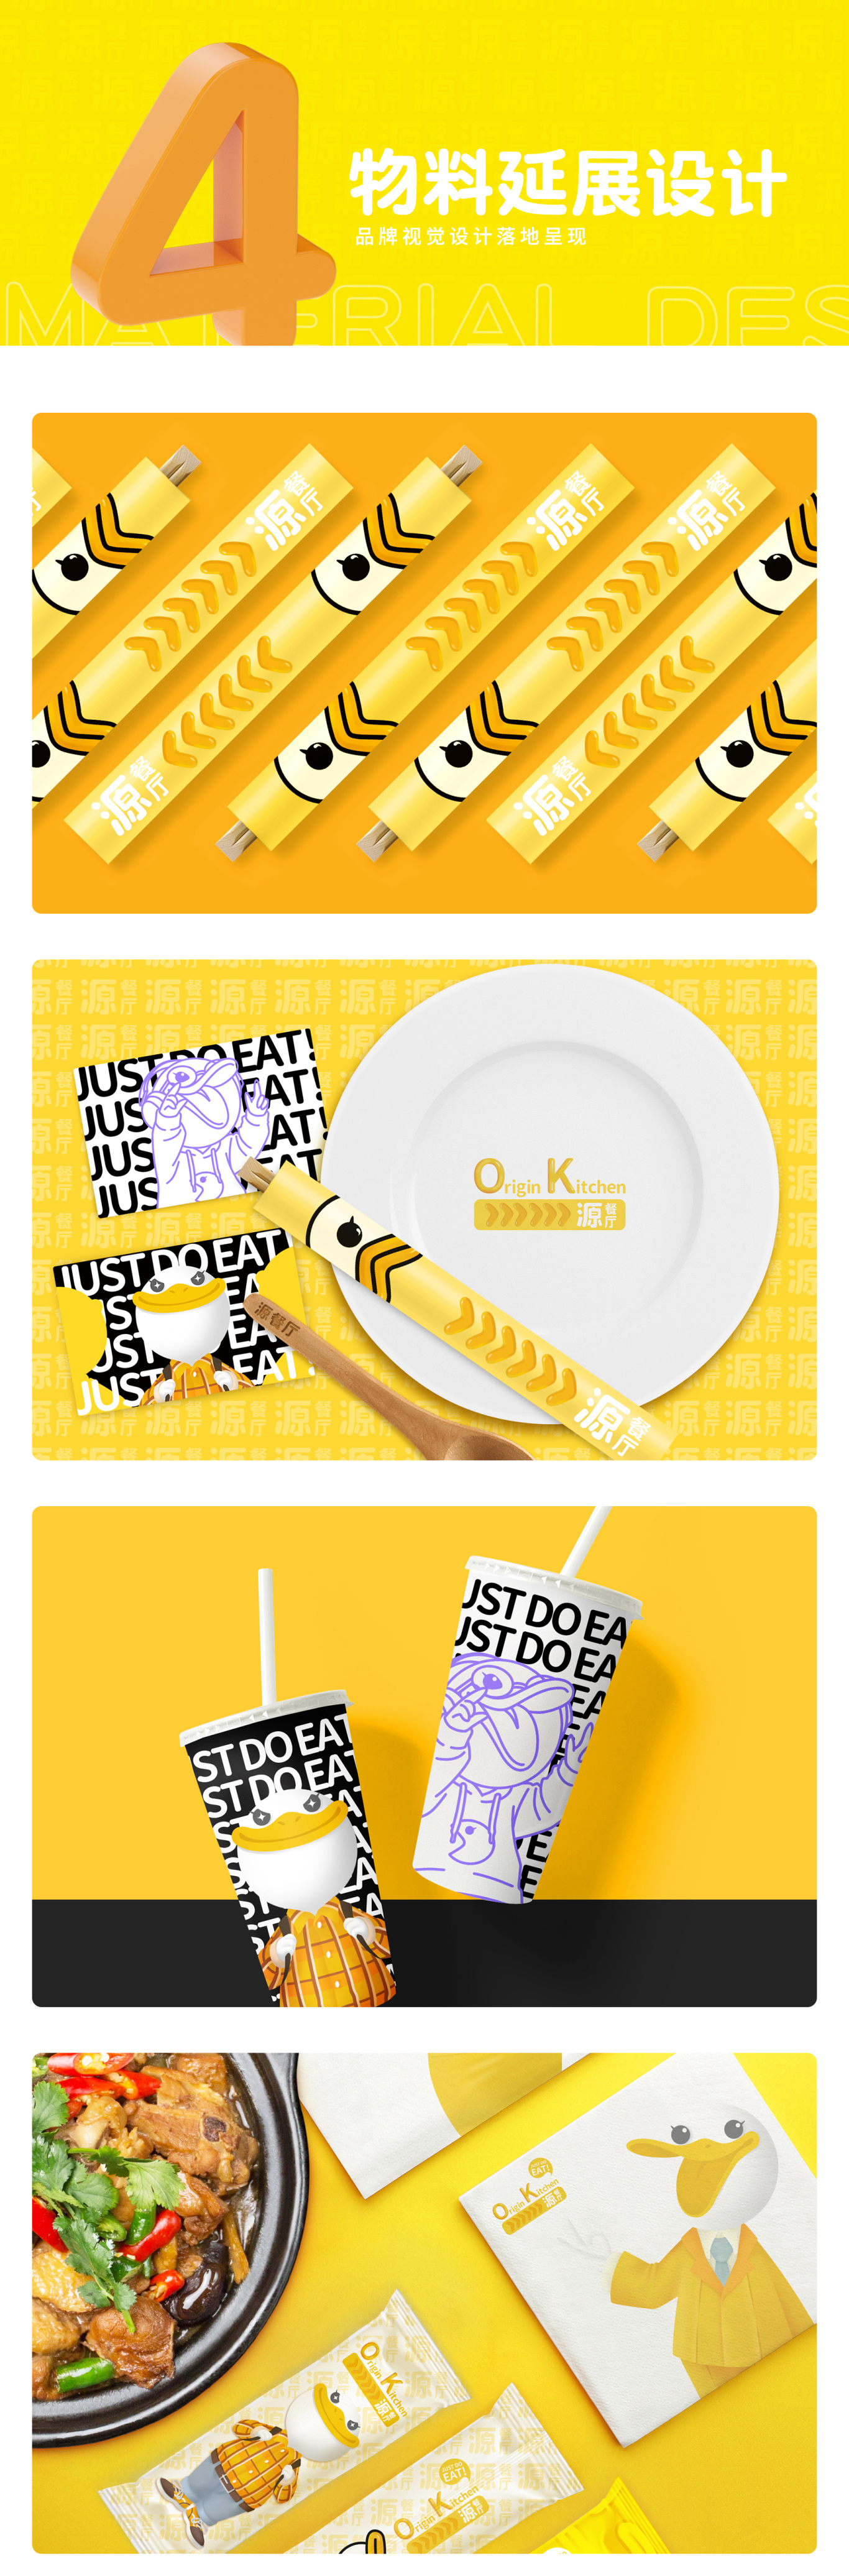 Origin Kitchen/新都市快餐厅 品牌全案打造图11